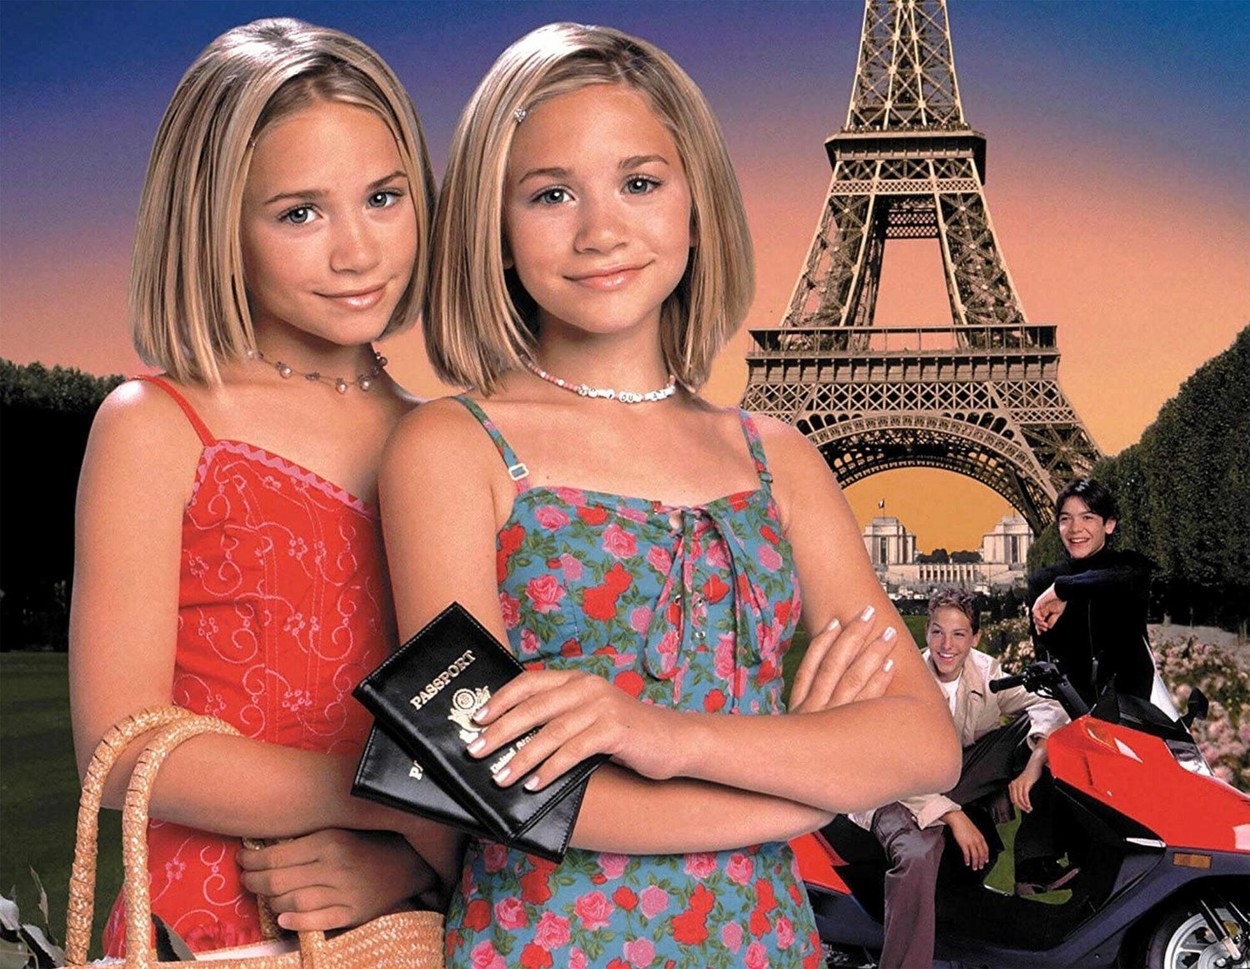 Мери-Кейт и Ашли Олсън станаха известни още като деца, участвайки в различни телевизионни филми и сериали